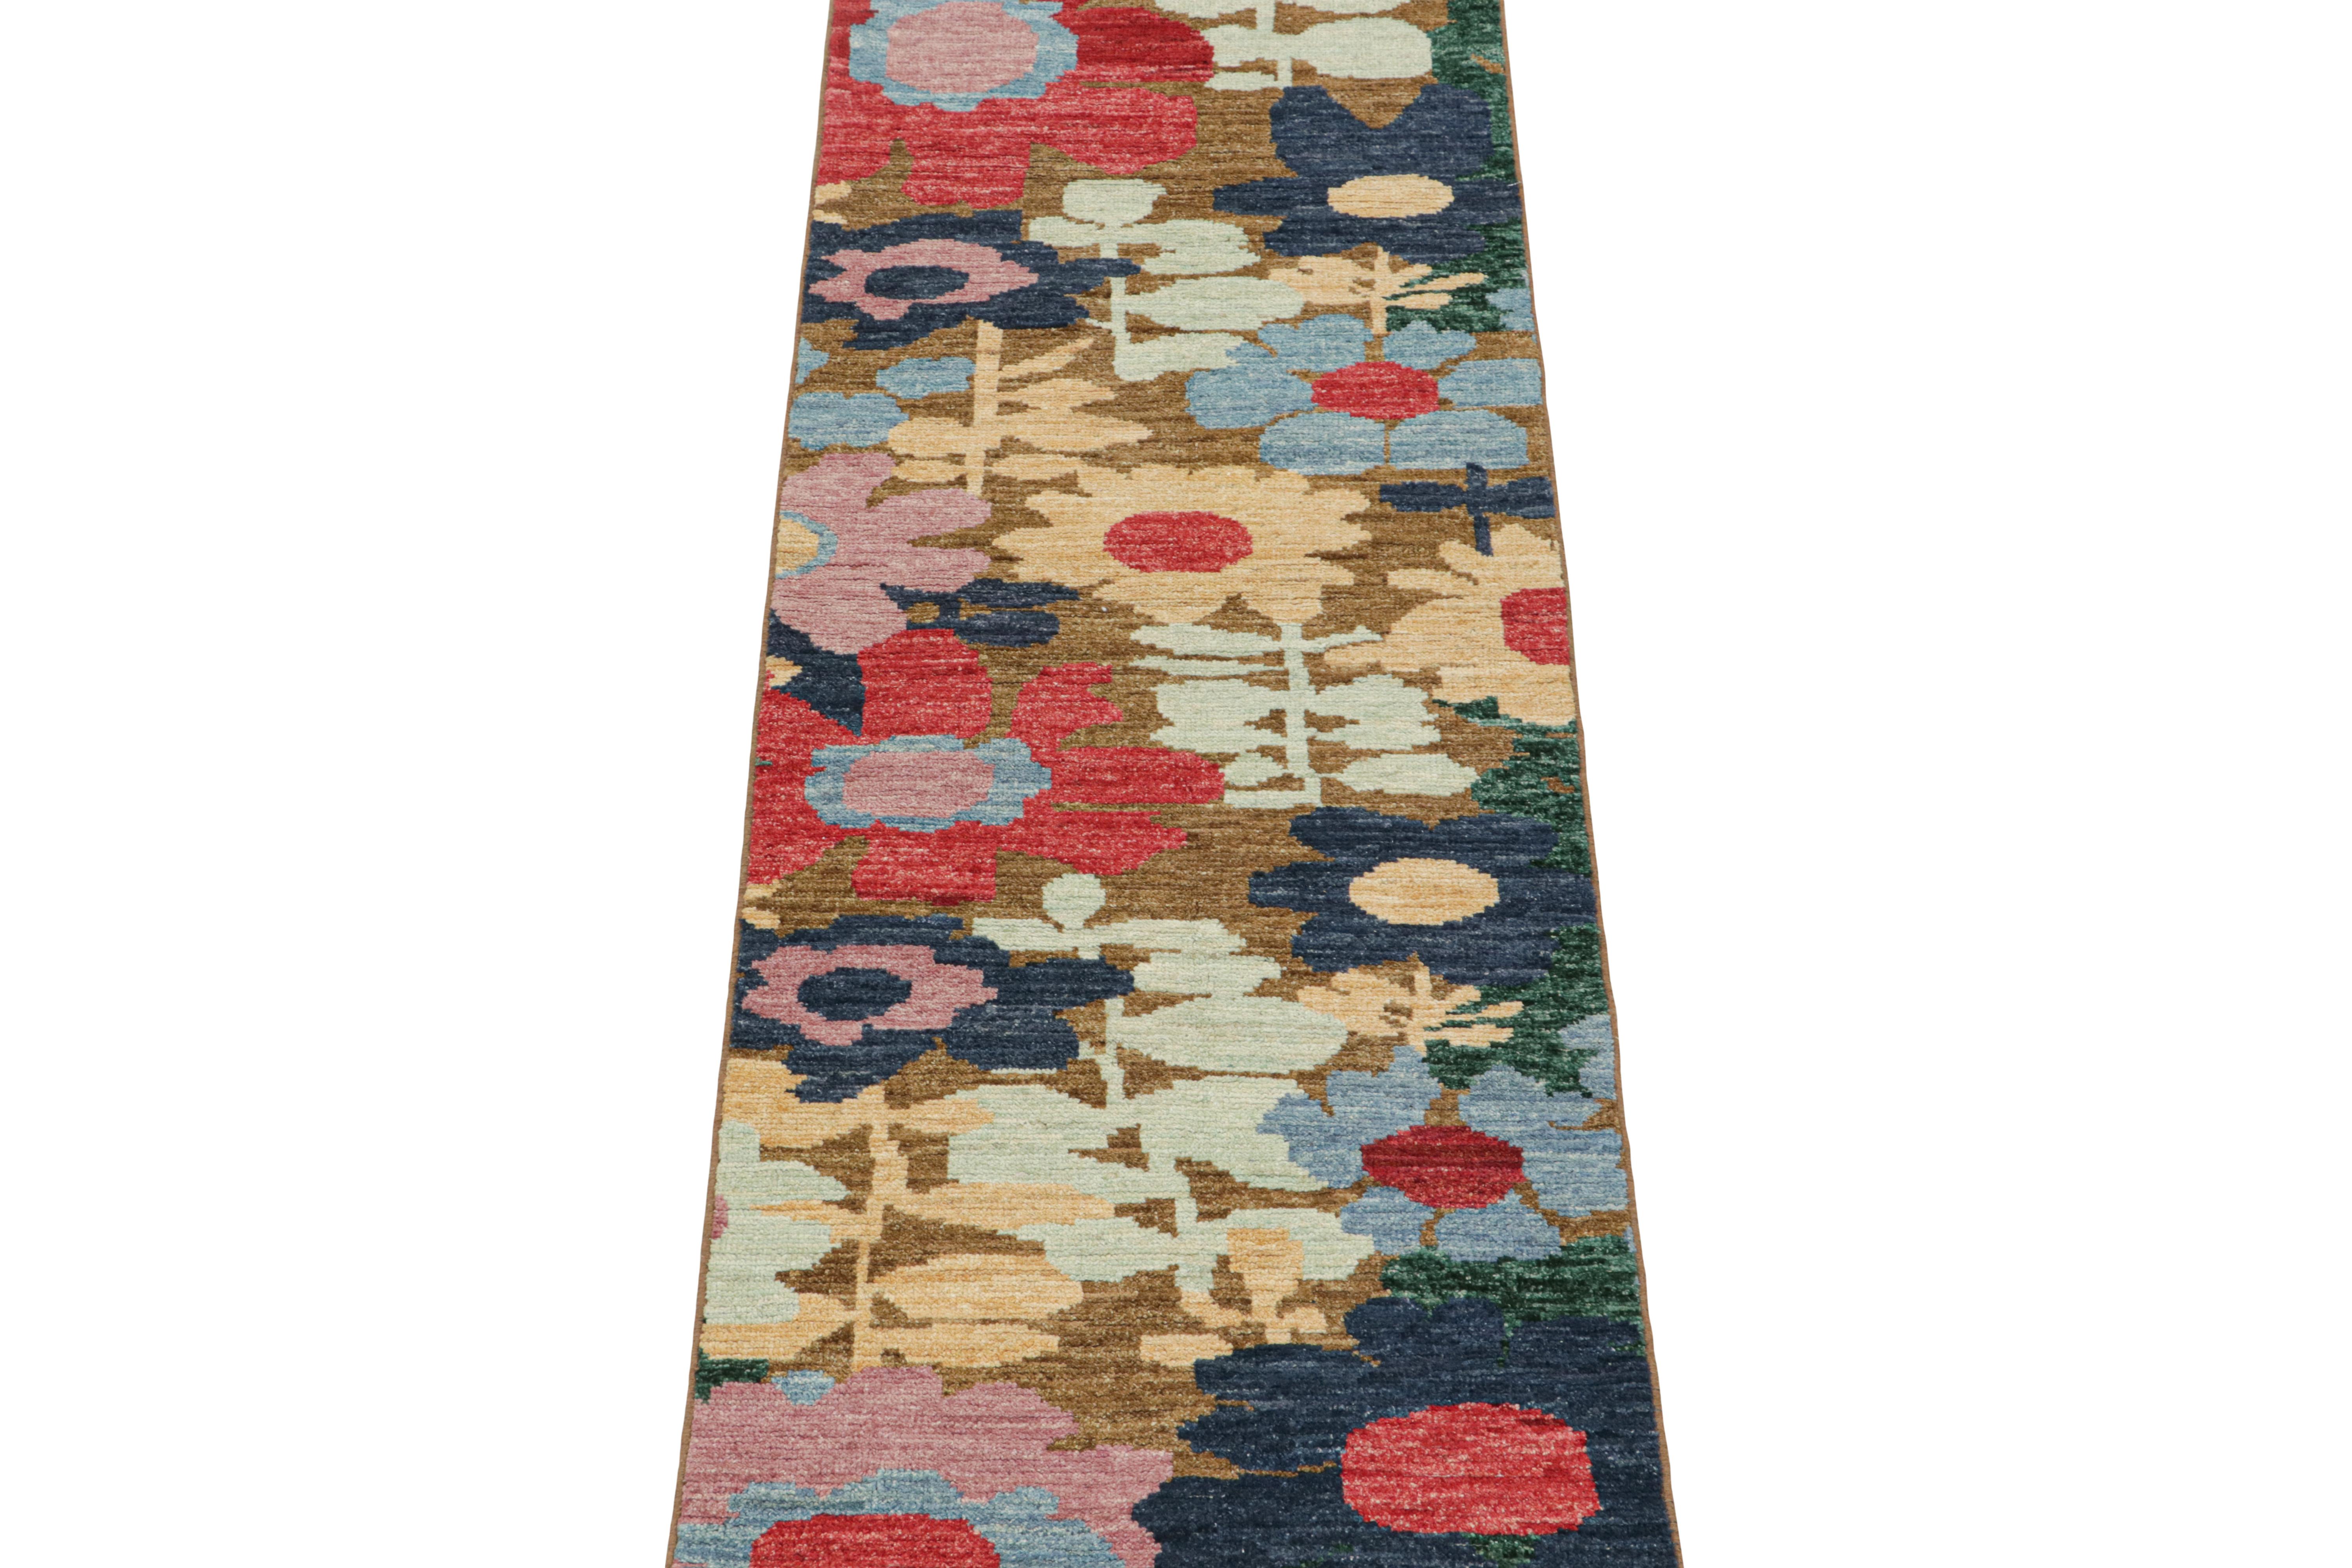 Ce chemin de table contemporain de 3x8 est le dernier ajout à la Collection New & Kilim de Rug & Kilim. Noué à la main en laine.

Plus d'informations sur le design :

Cette pièce rafraîchissante présente des motifs floraux polychromes dans un style